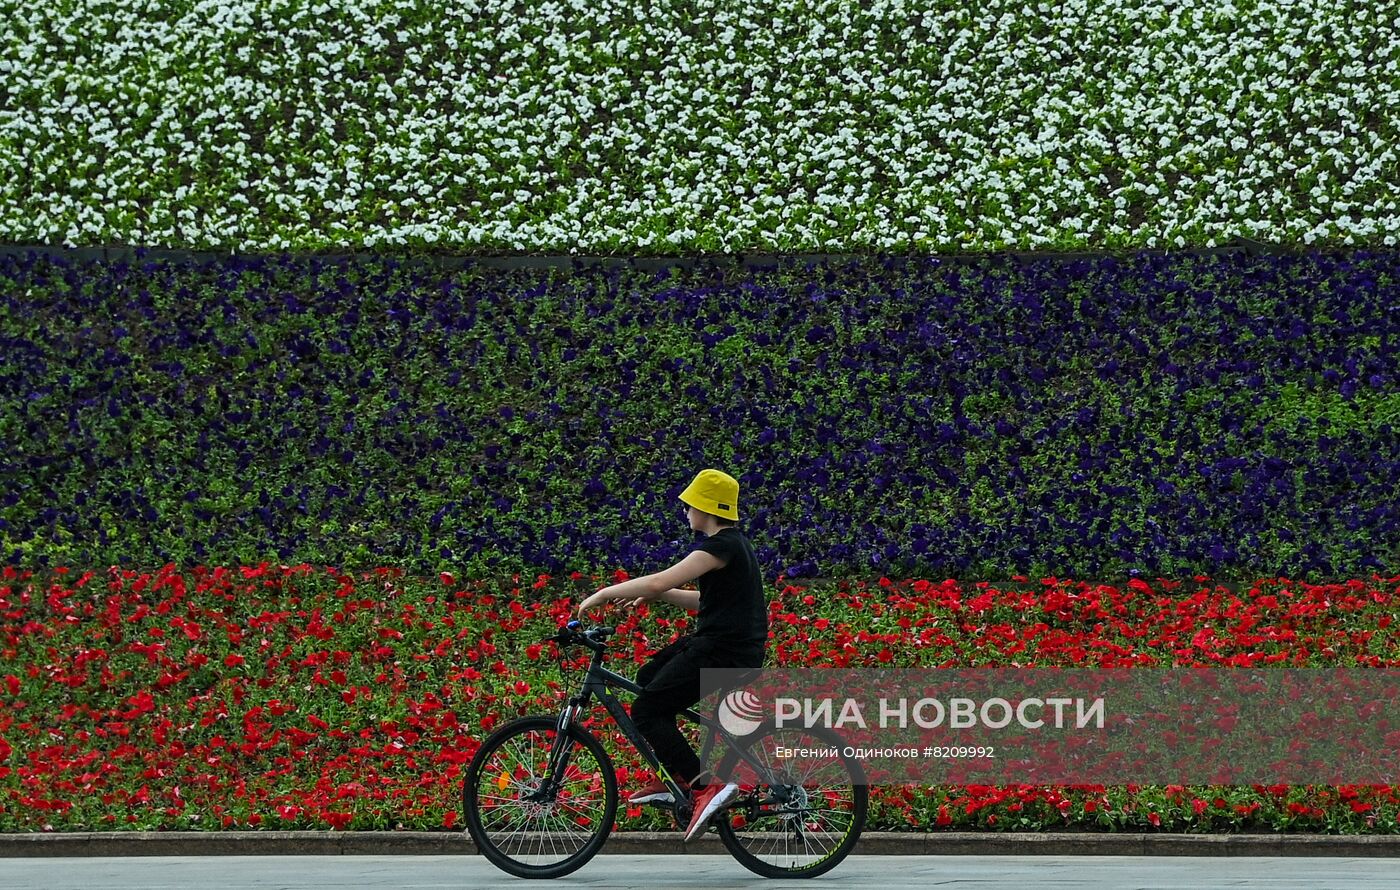 Парк Победы украсили петуньями в цветах российского триколора ко Дню России